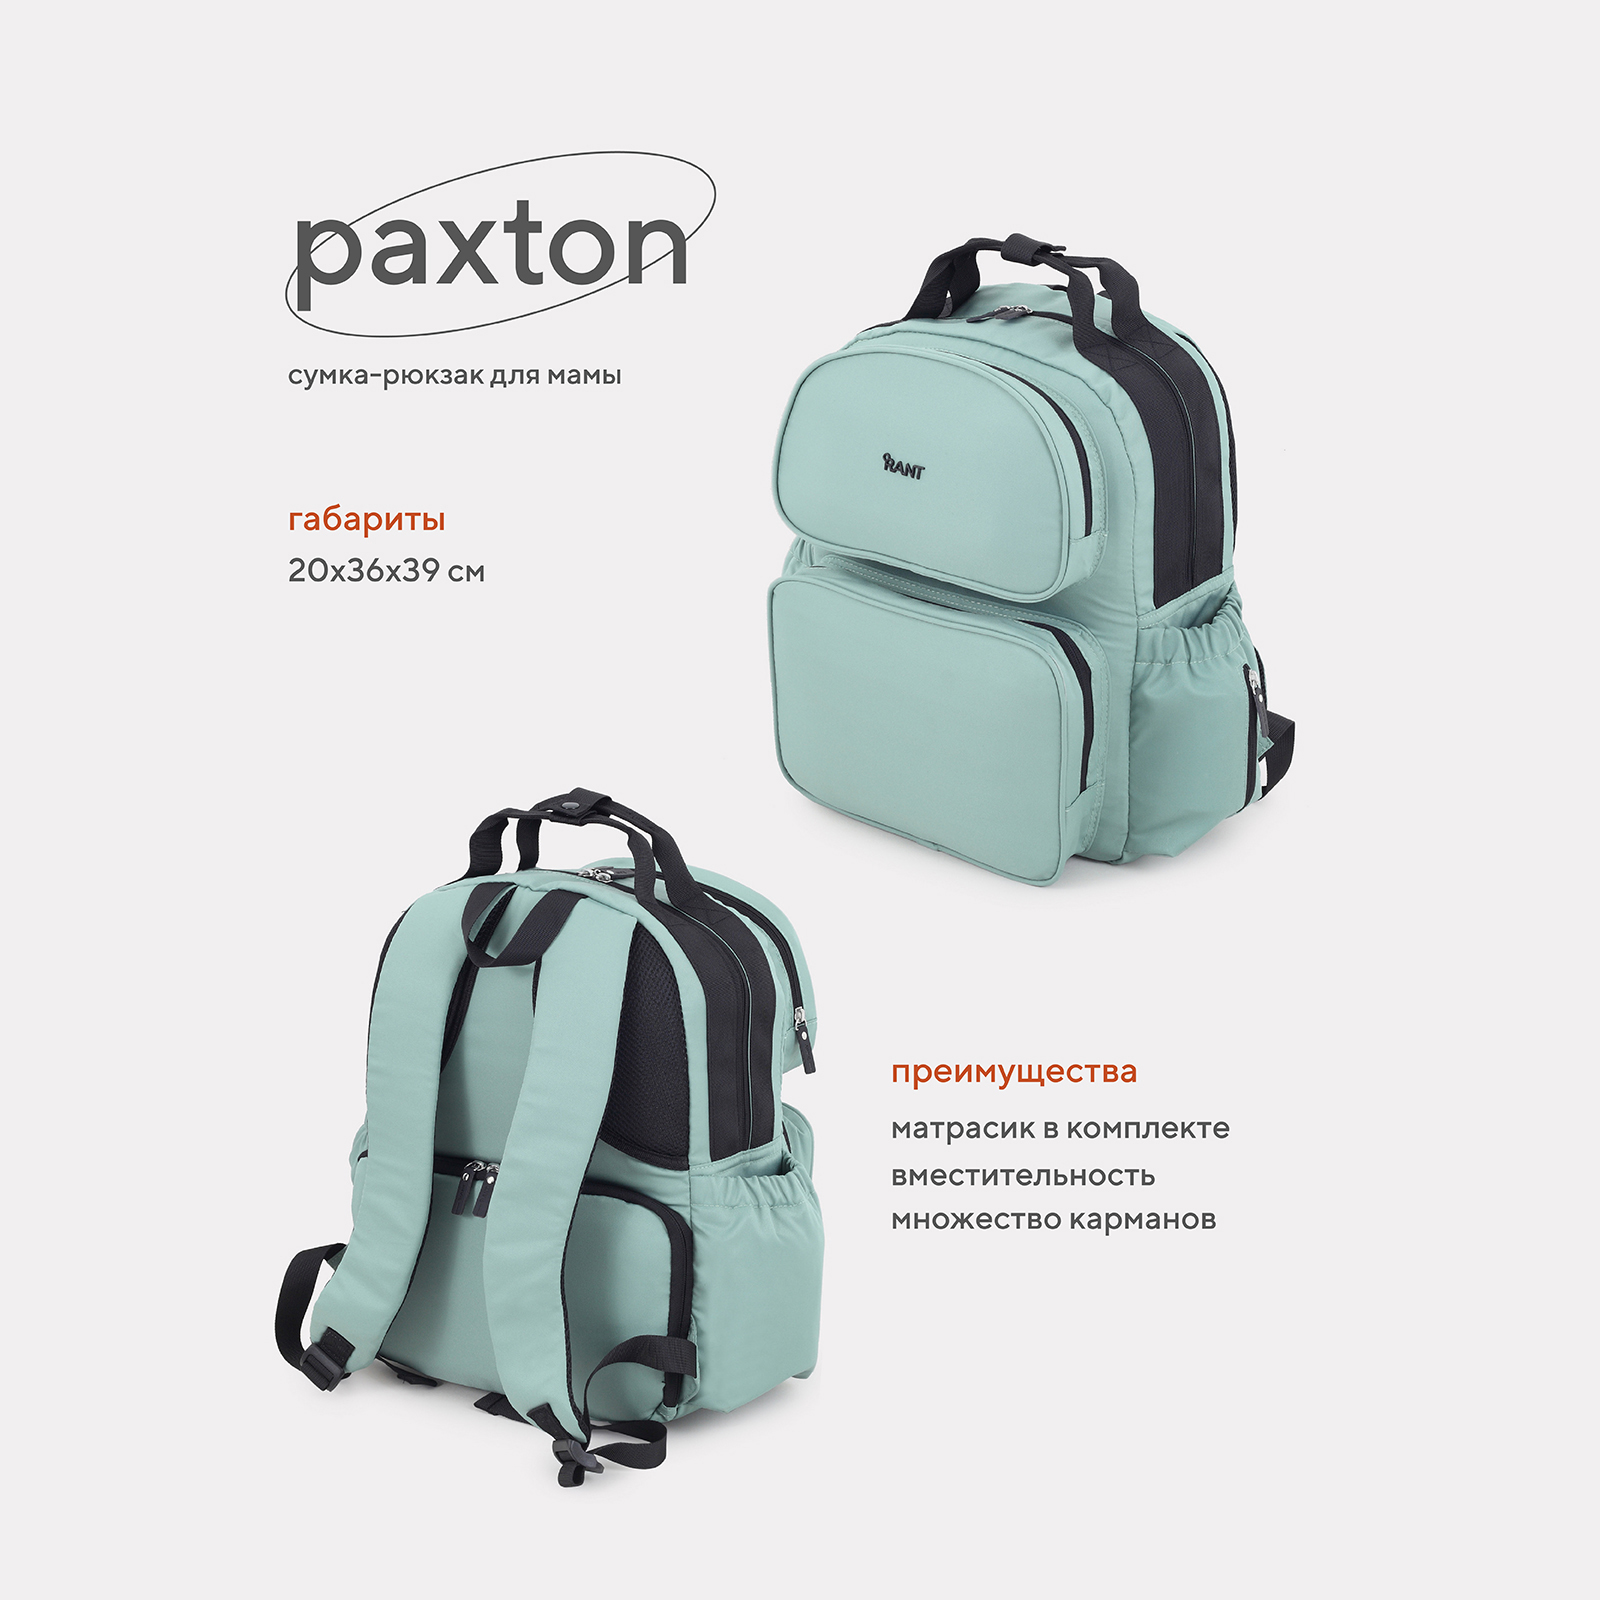 Сумка-рюкзак для мамы RANT Paxton RB008 Green сумка рюкзак для мамы forest kids tarde green ak789668